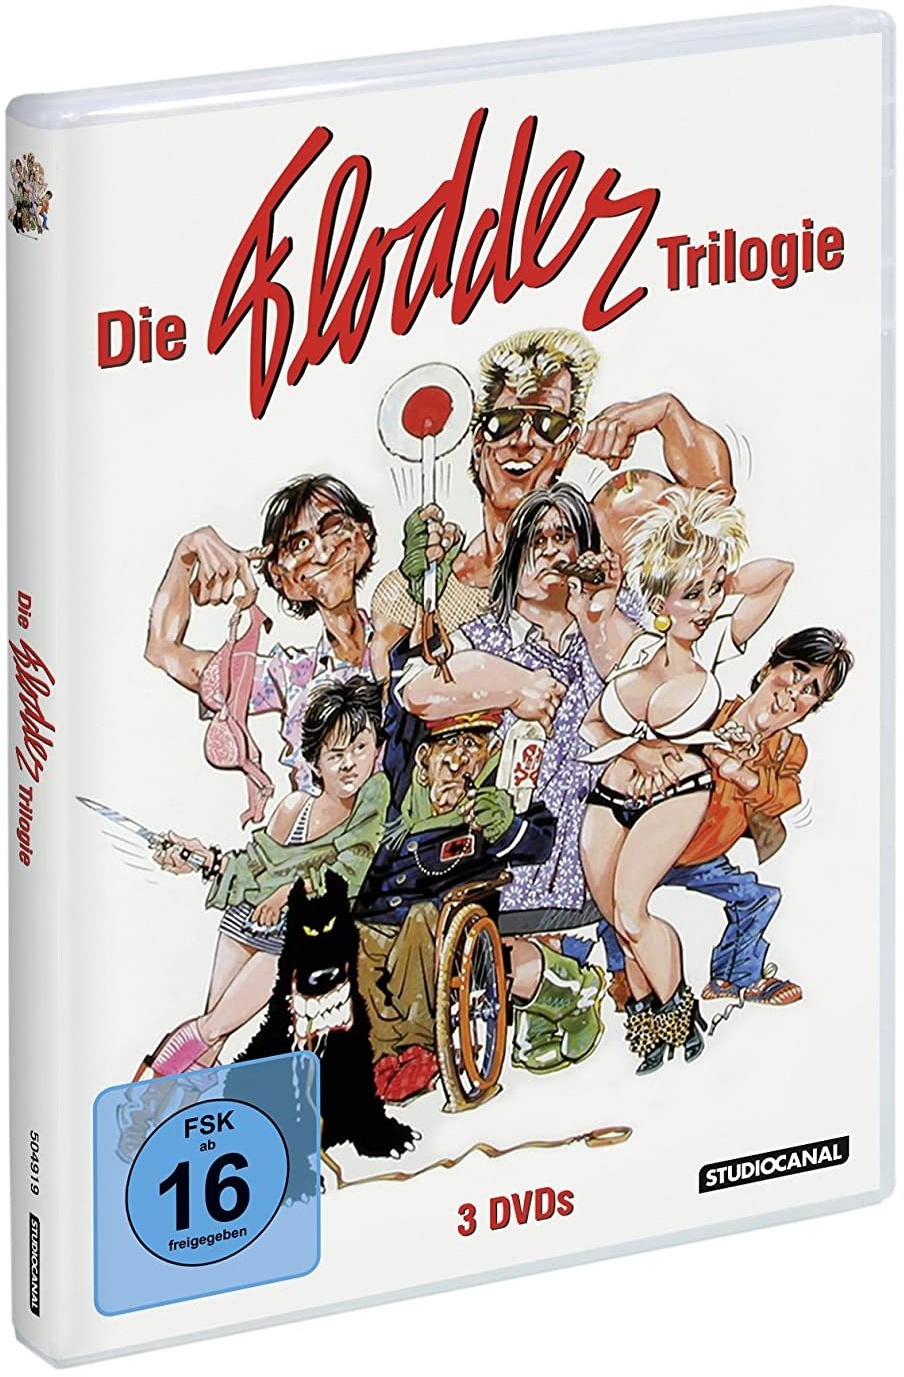 Die Flodder Trilogie (DVD)